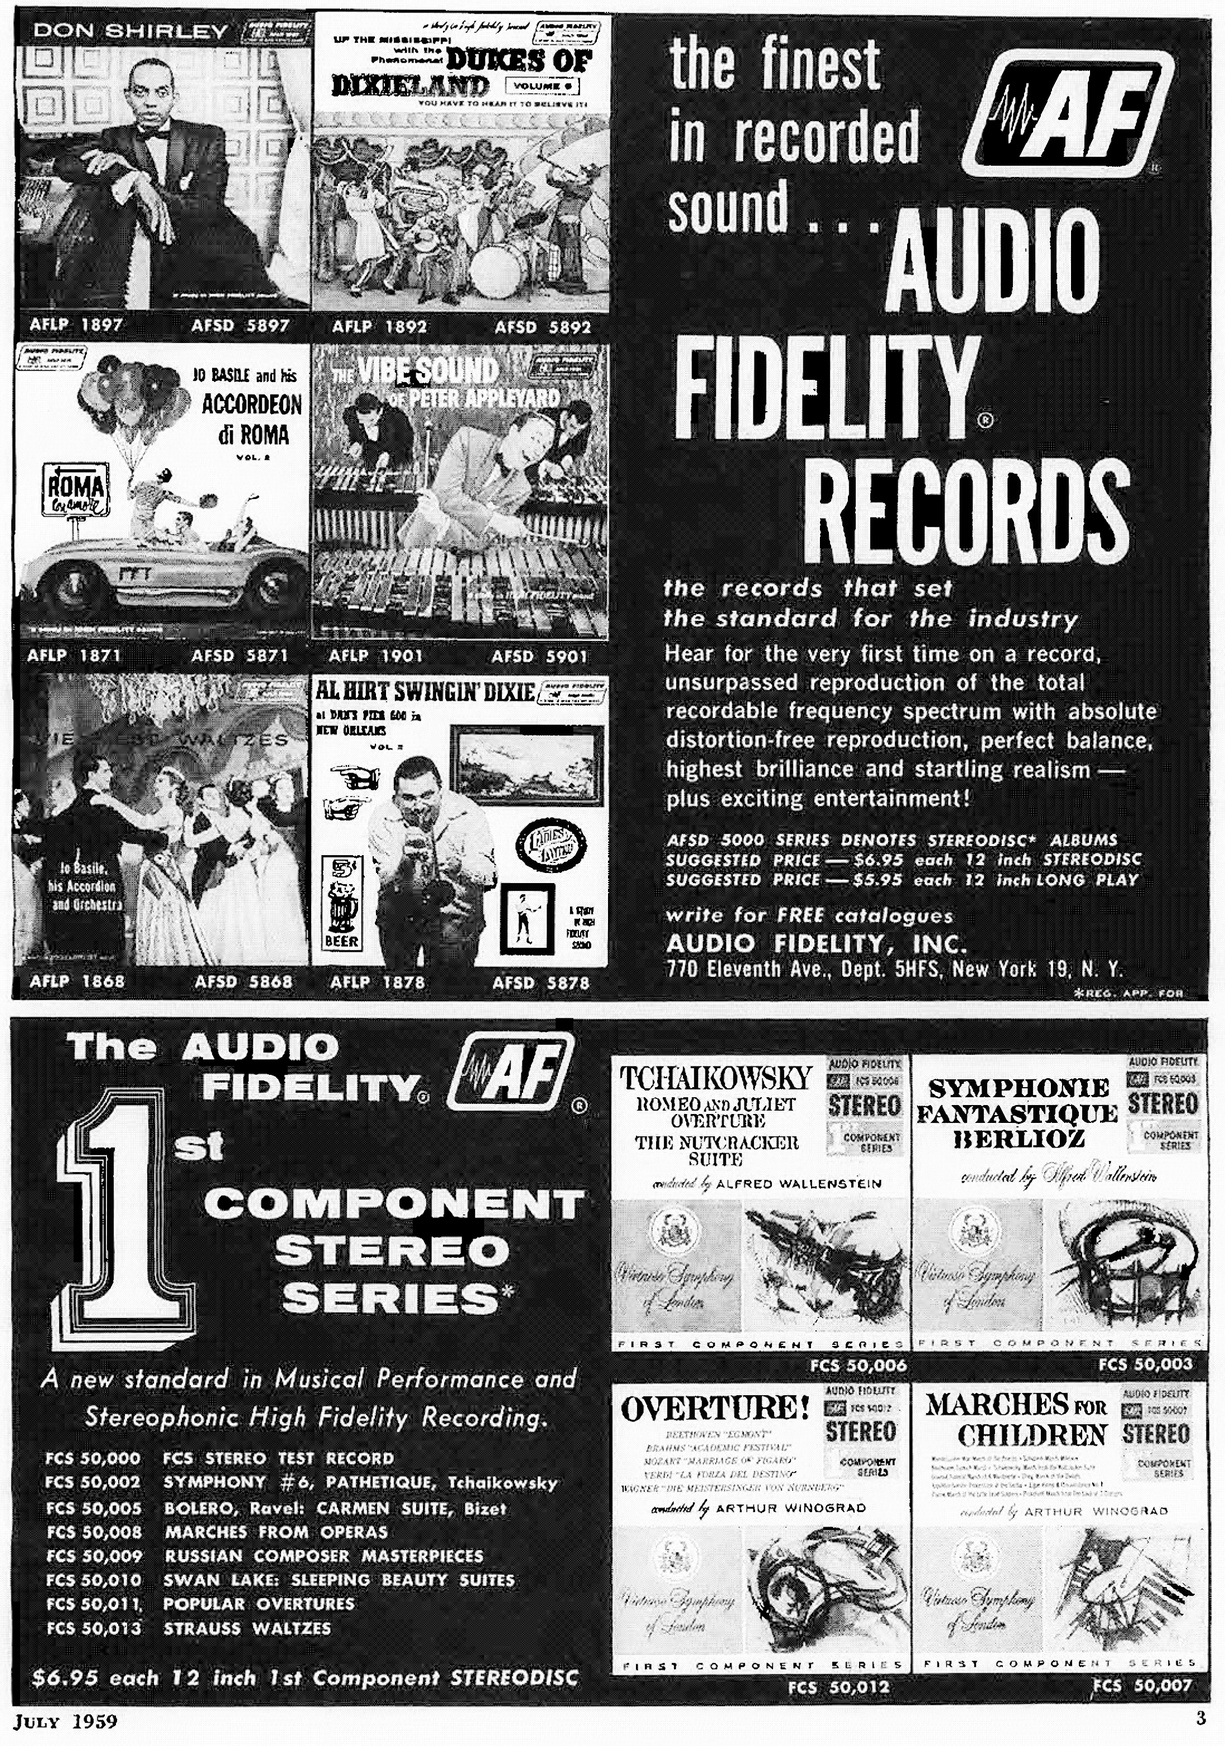 Audio fidelity records